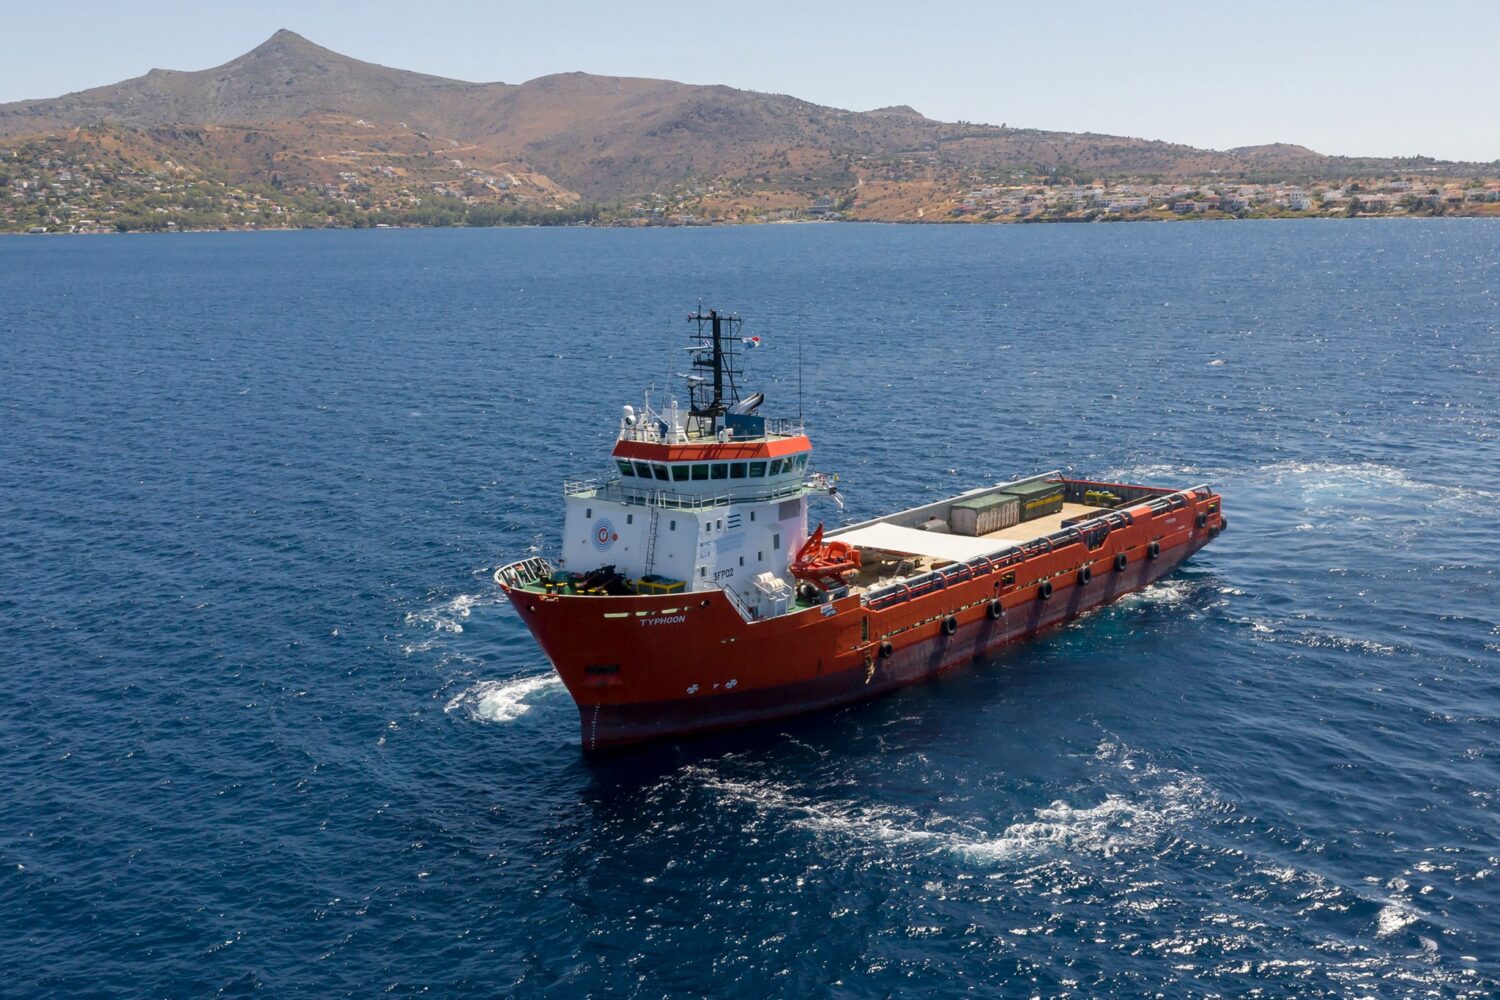 Διάκριση για το “Typhoon Project” Στα Lloyd’s List Greek Shipping Awards 2020 - e-Nautilia.gr | Το Ελληνικό Portal για την Ναυτιλία. Τελευταία νέα, άρθρα, Οπτικοακουστικό Υλικό